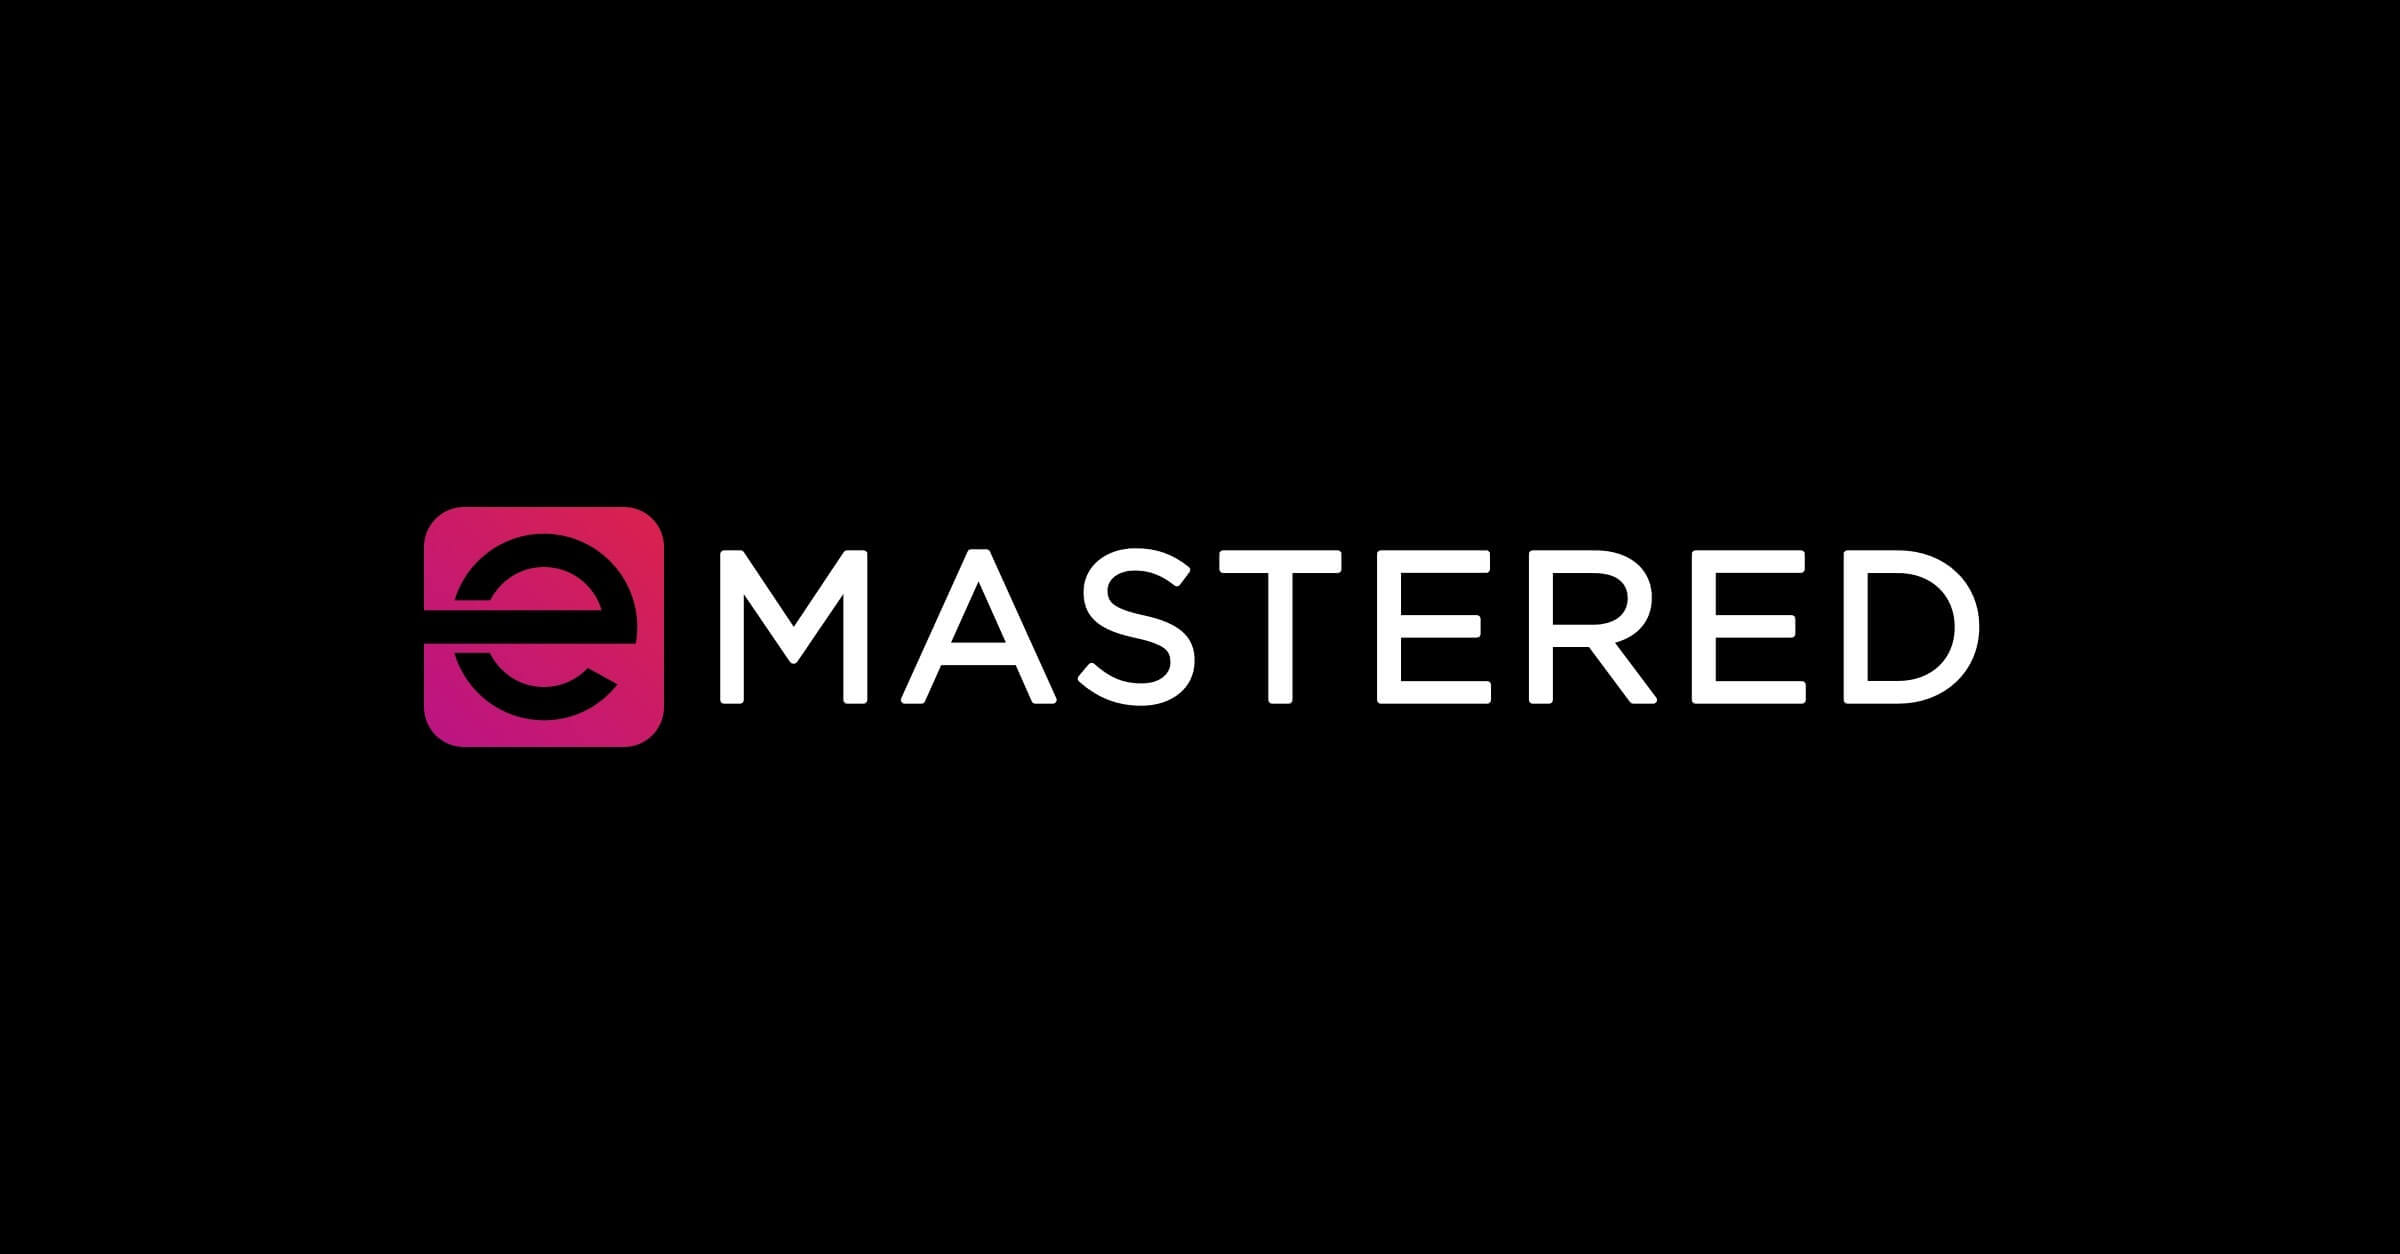 Emastered - онлайн -инструмент мастеринга для улучшения звука музыкальных треков